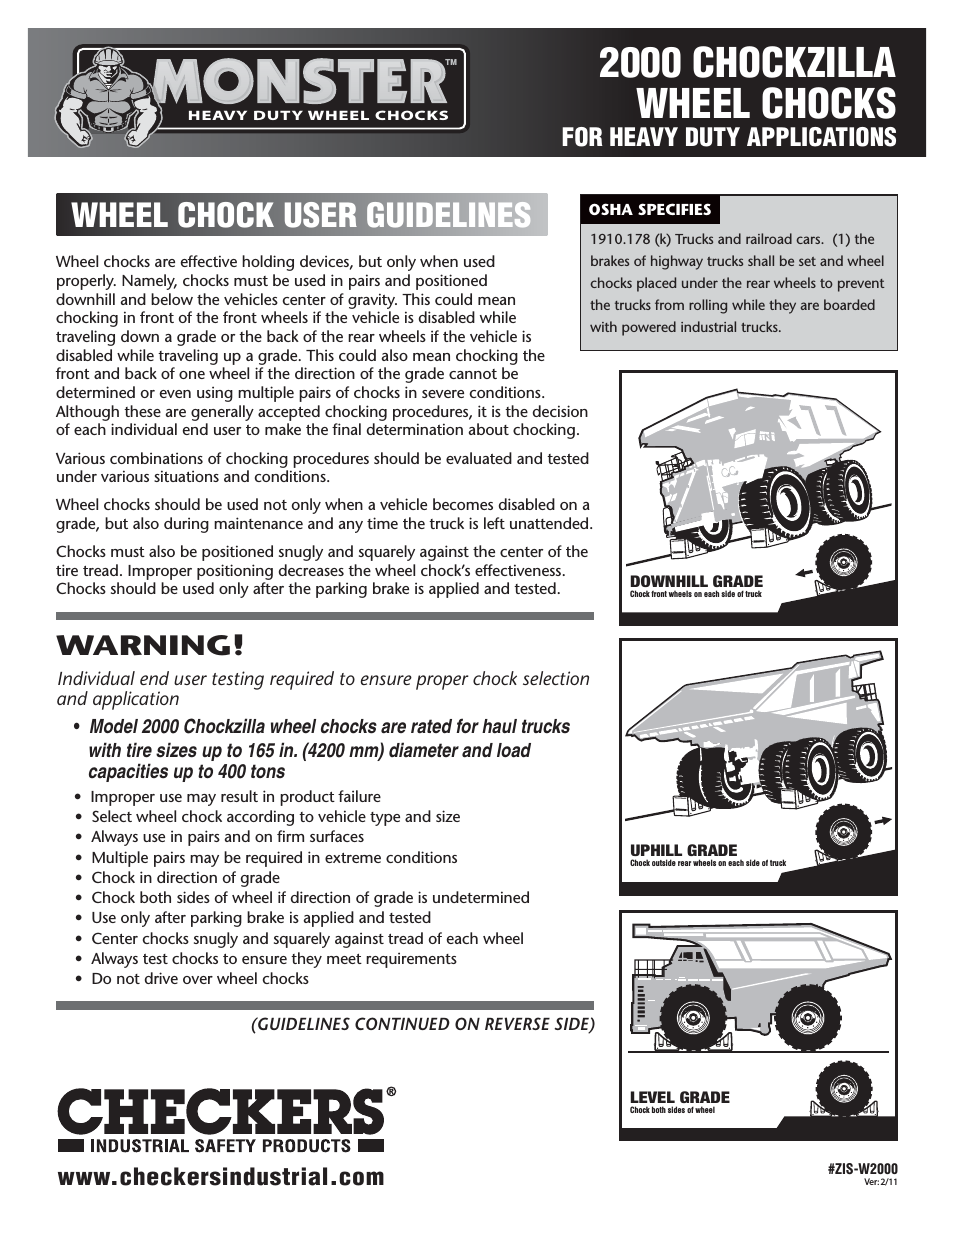 Monster 2000 Wheel Chocks User Guidelines